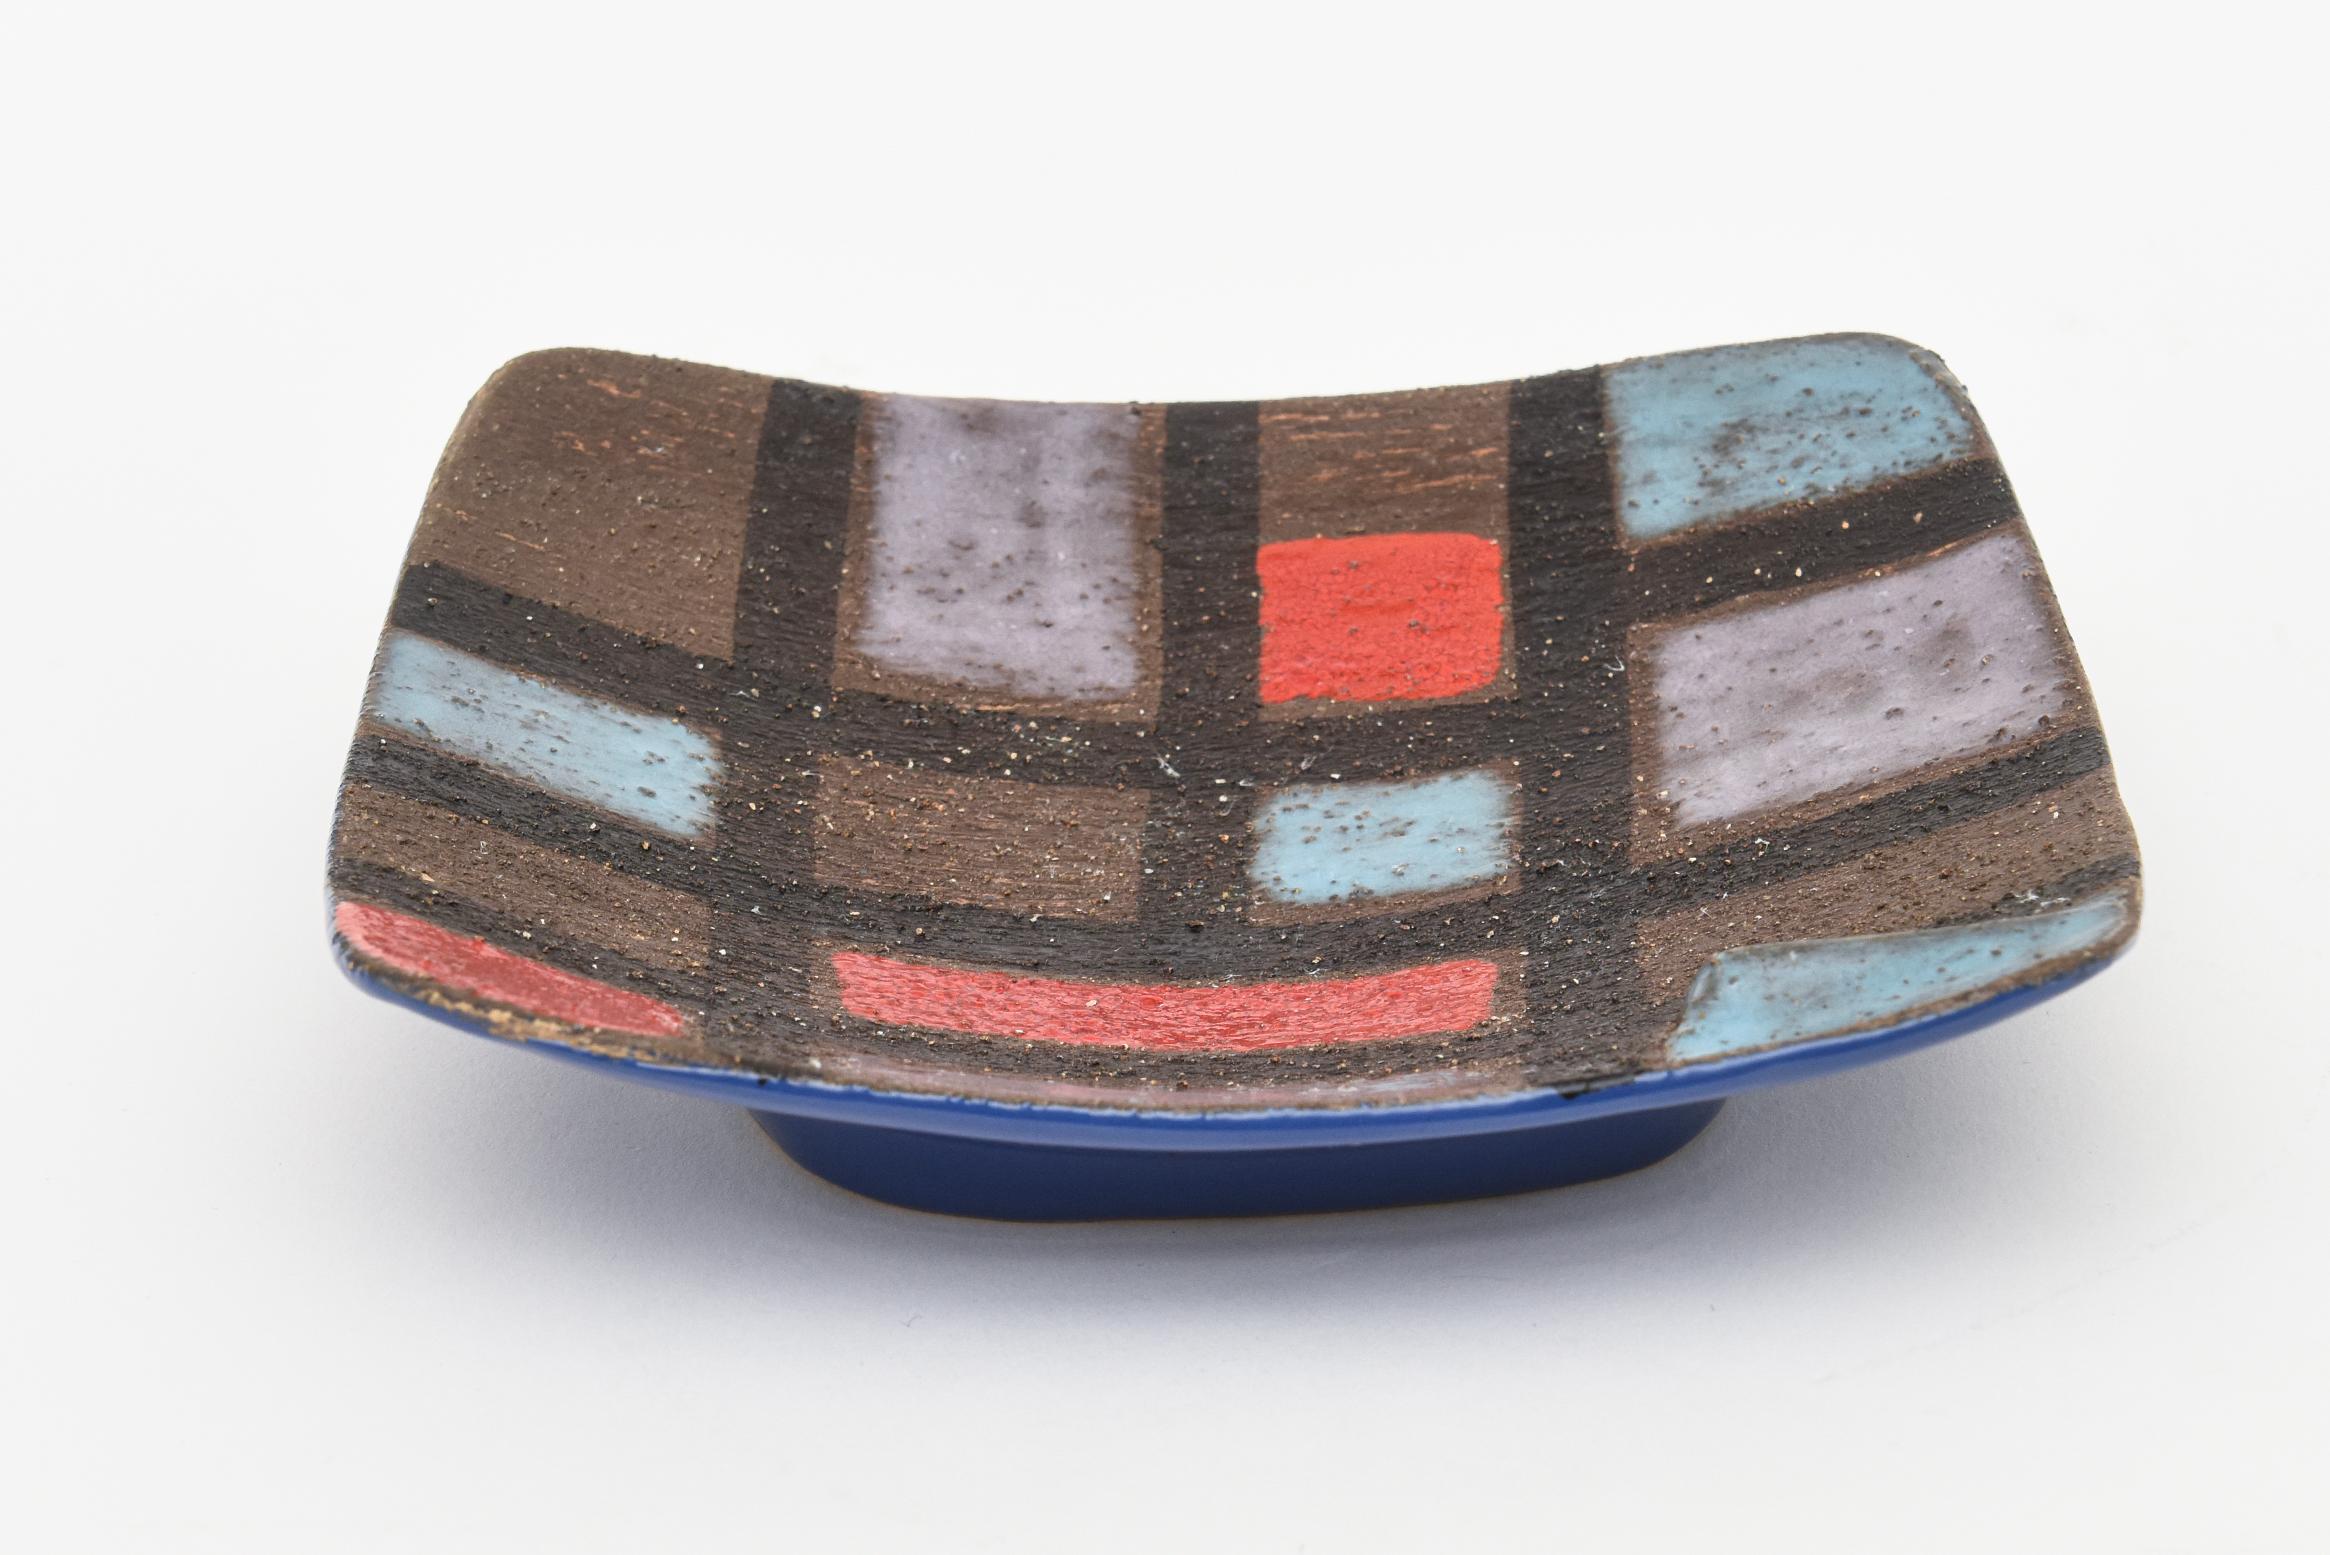 Diese schöne italienische Keramikschüssel mit buntem Patchwork ist mit Raymor signiert und wurde von Bitossi entworfen. Dies ist aus den 1960er Jahren. Die Punzen auf der Unterseite lauten R450-SA Raymor Italy. Es ist grob strukturierte Farbe Gitter